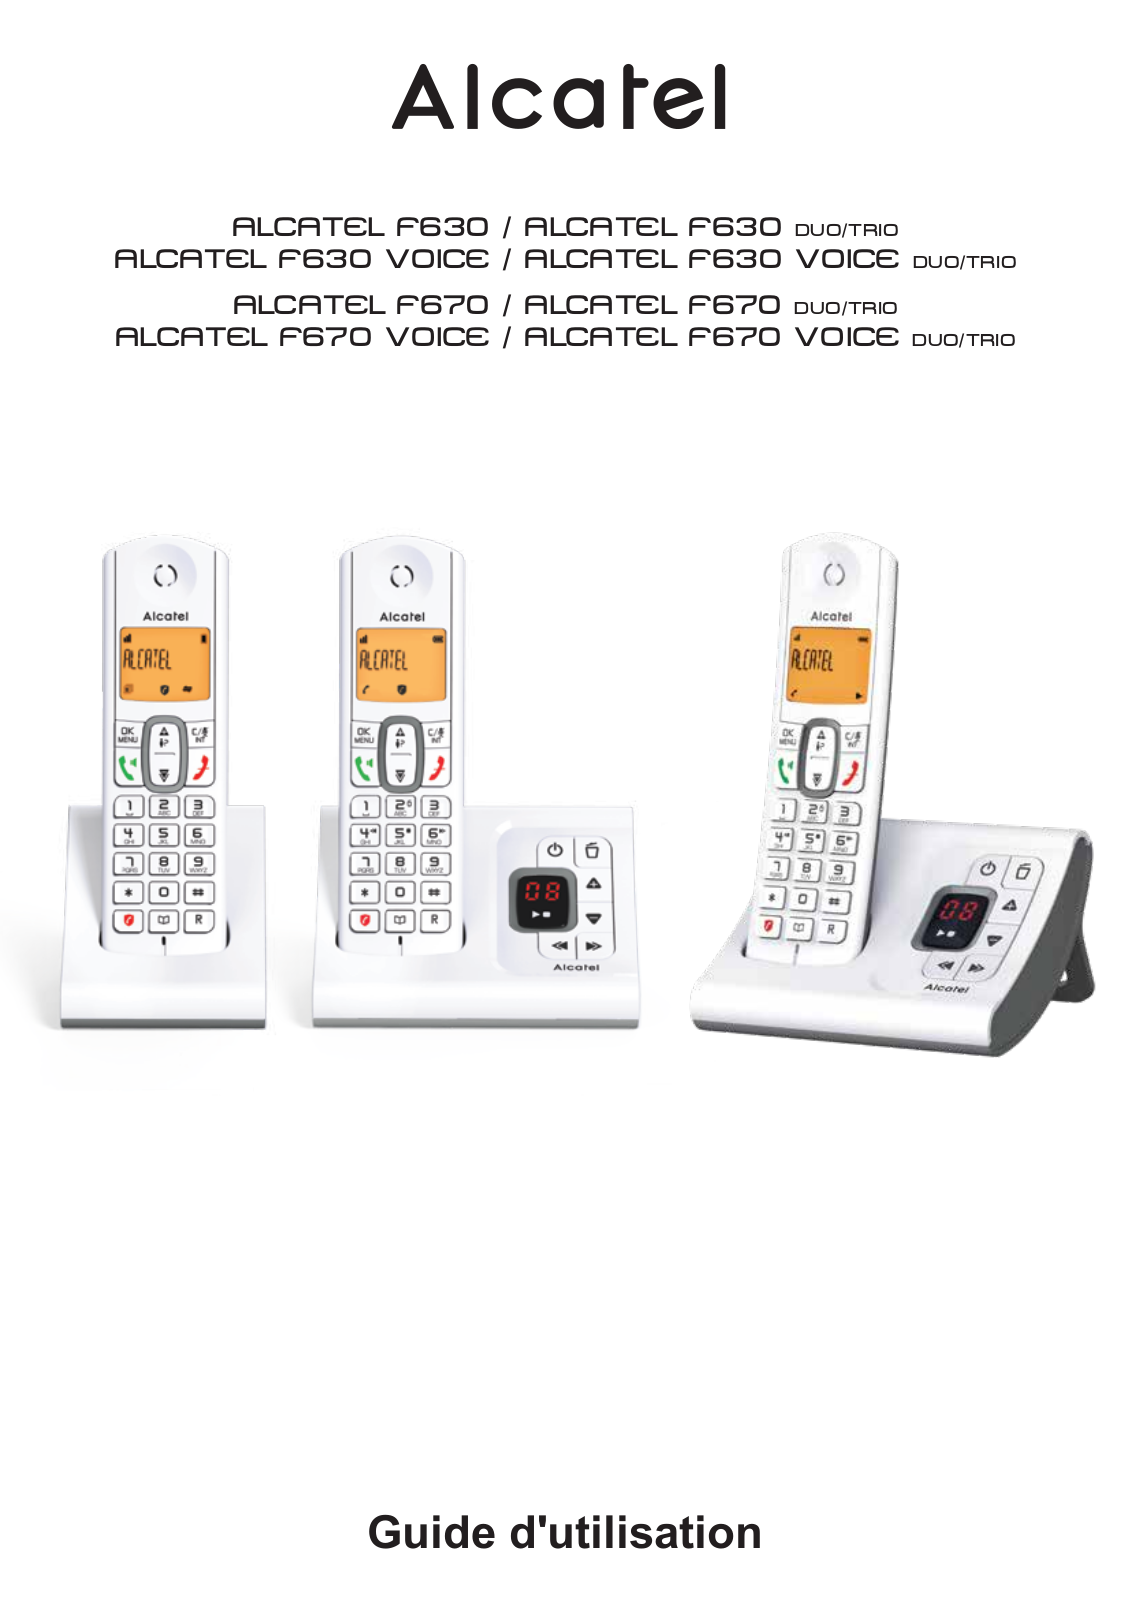 Alcatel F630, F630 DUO, F630 TRIO, F630 VIOCE, F630 VOICE DUO User Manual